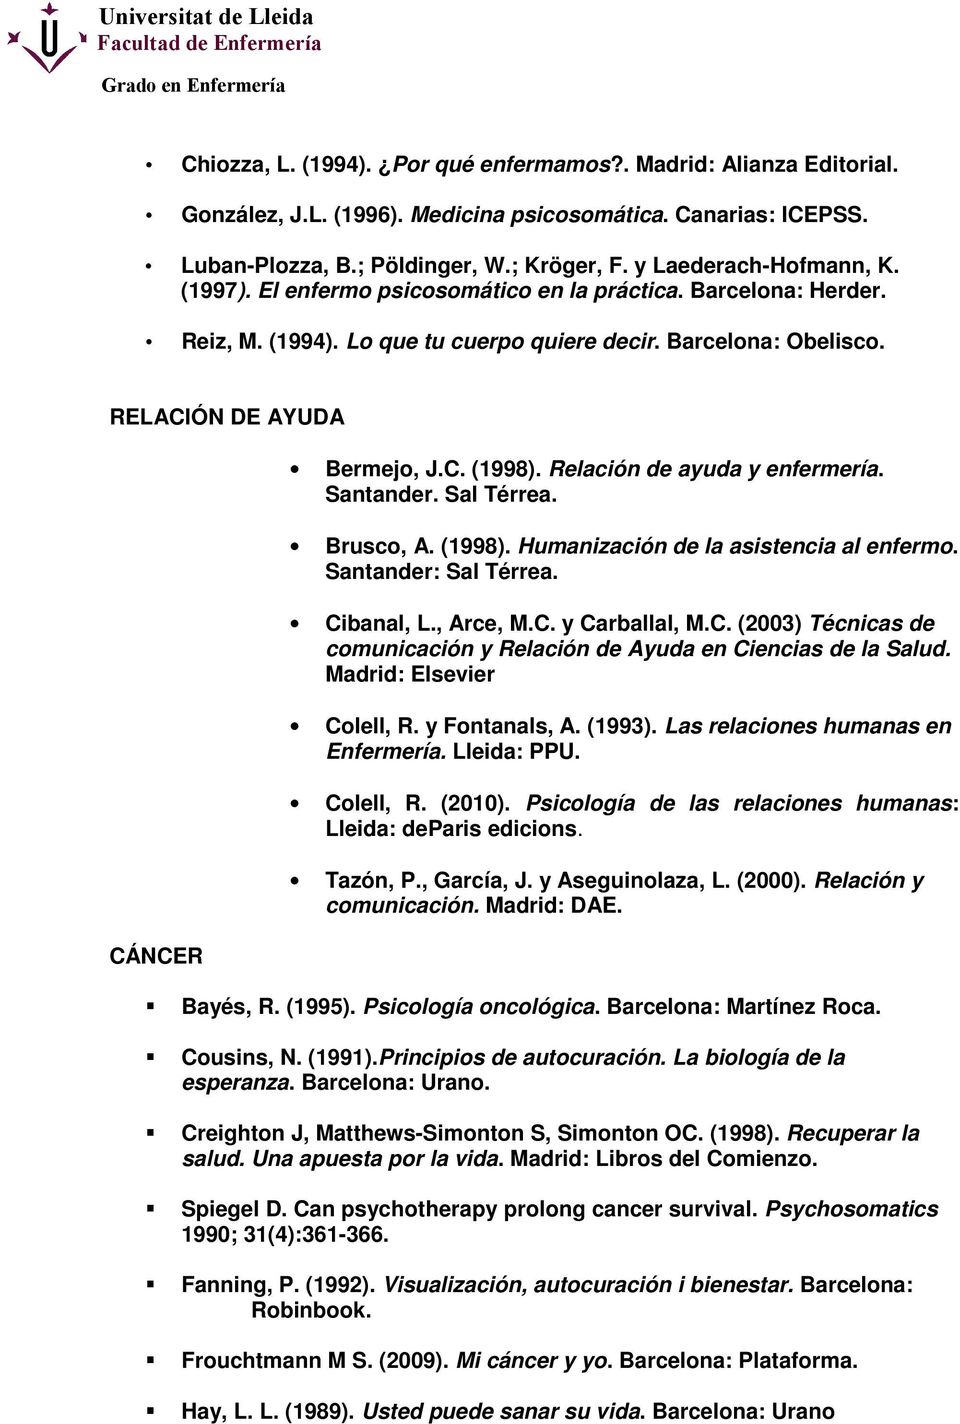 Relación de ayuda y enfermería. Santander. Sal Térrea. Brusco, A. (1998). Humanización de la asistencia al enfermo. Santander: Sal Térrea. Ci